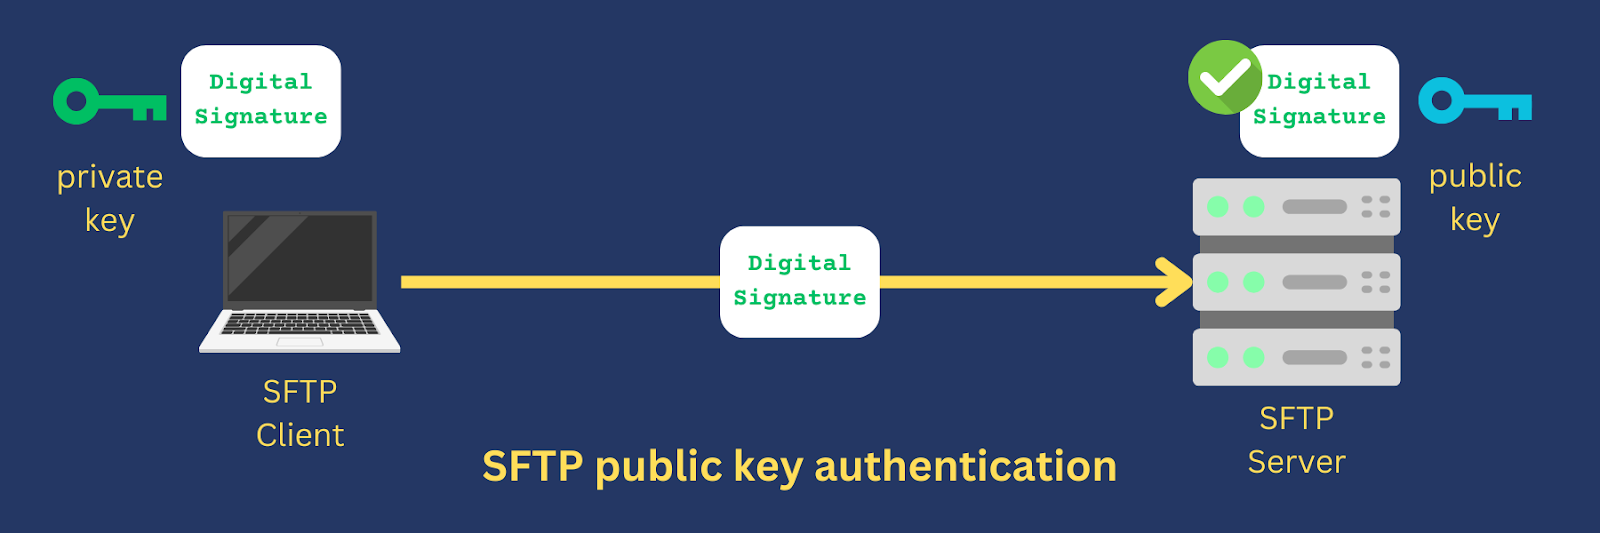 sftp public key authentication